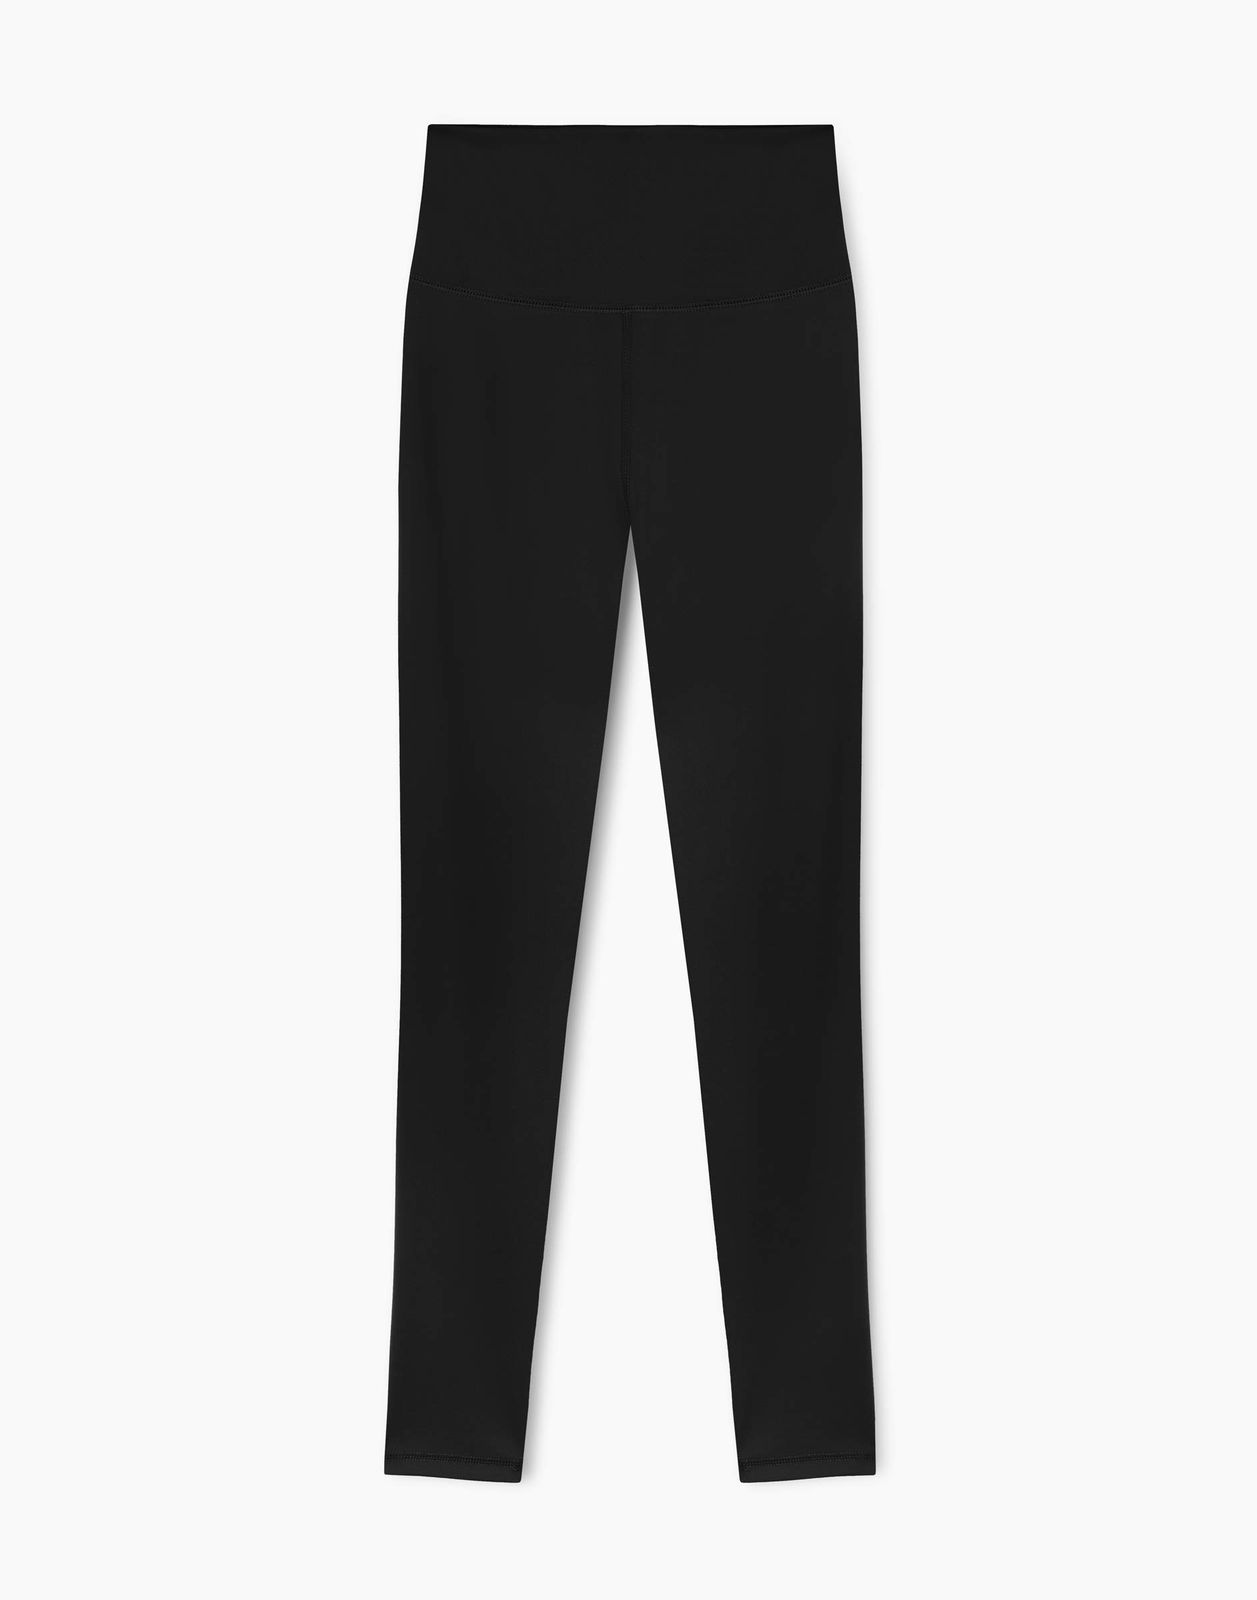 Спортивные леггинсы женские Gloria Jeans GRT000196 черные M/164 (44-46)